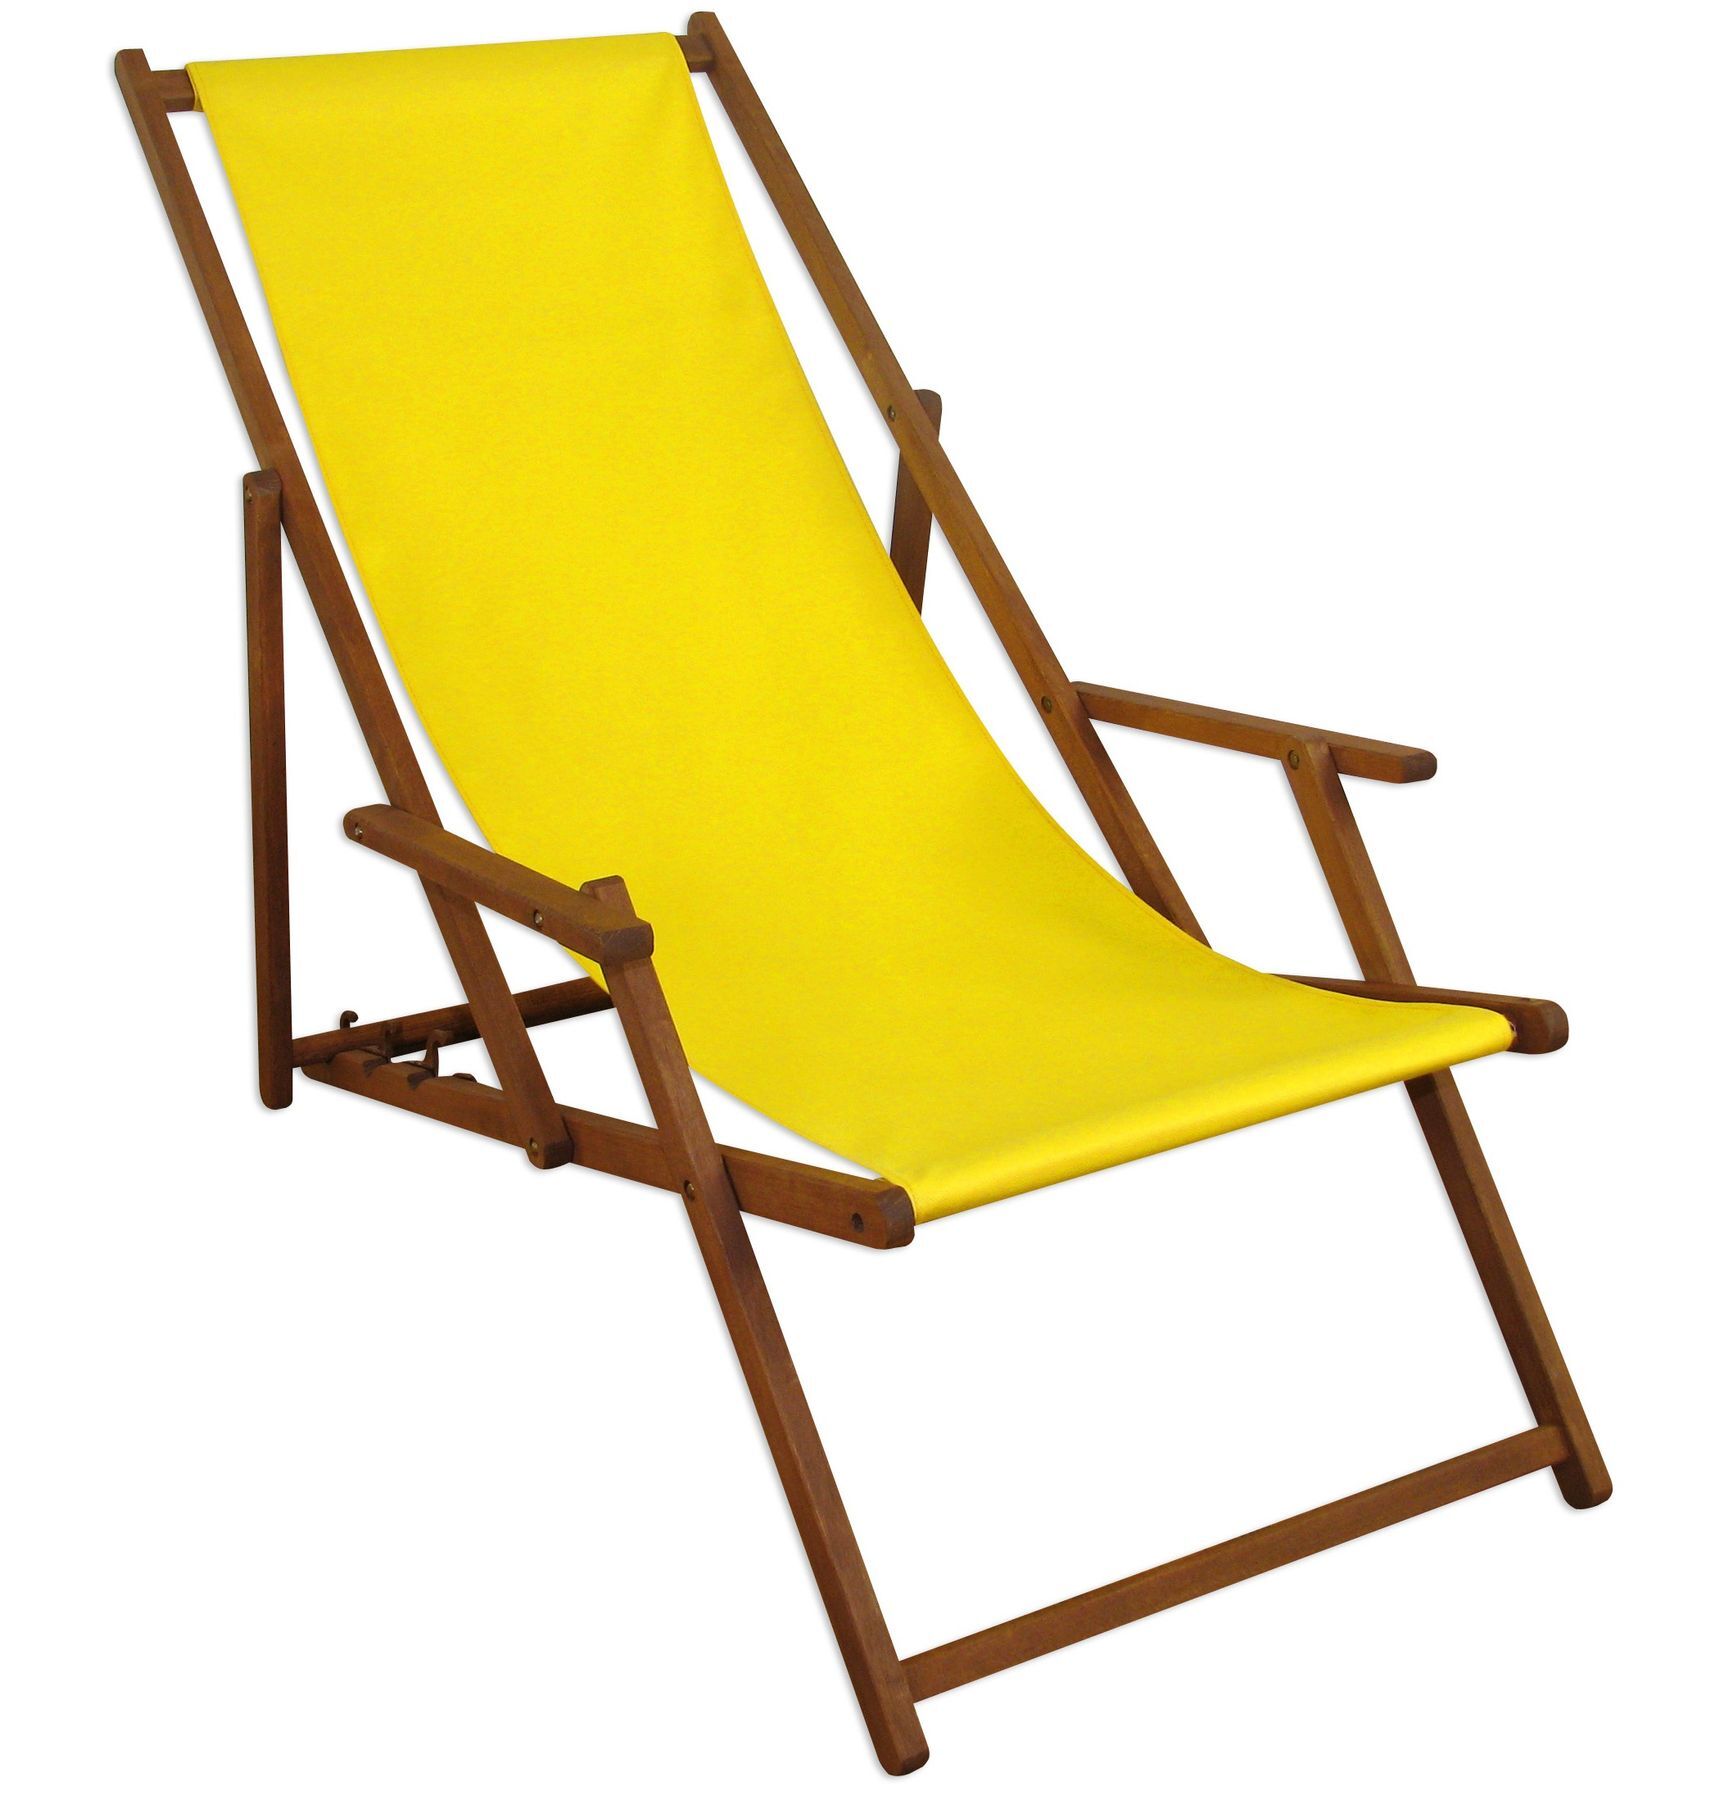 Sedia a sdraio in legno con molti accessori a scelta, colore del tessuto giallo V-10-302